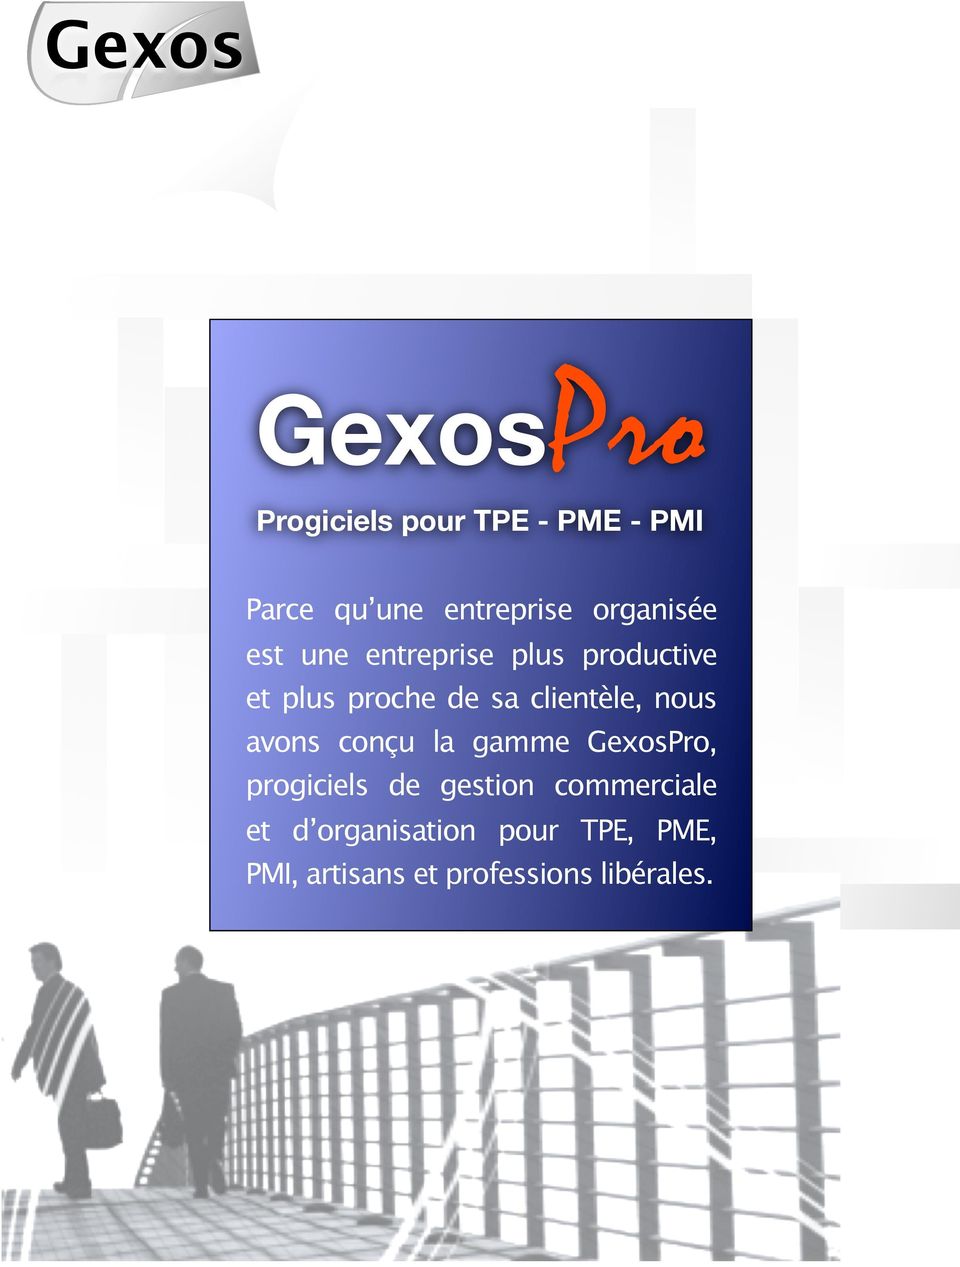 clientèle, nous avons conçu la gamme GexosPro, progiciels de gestion